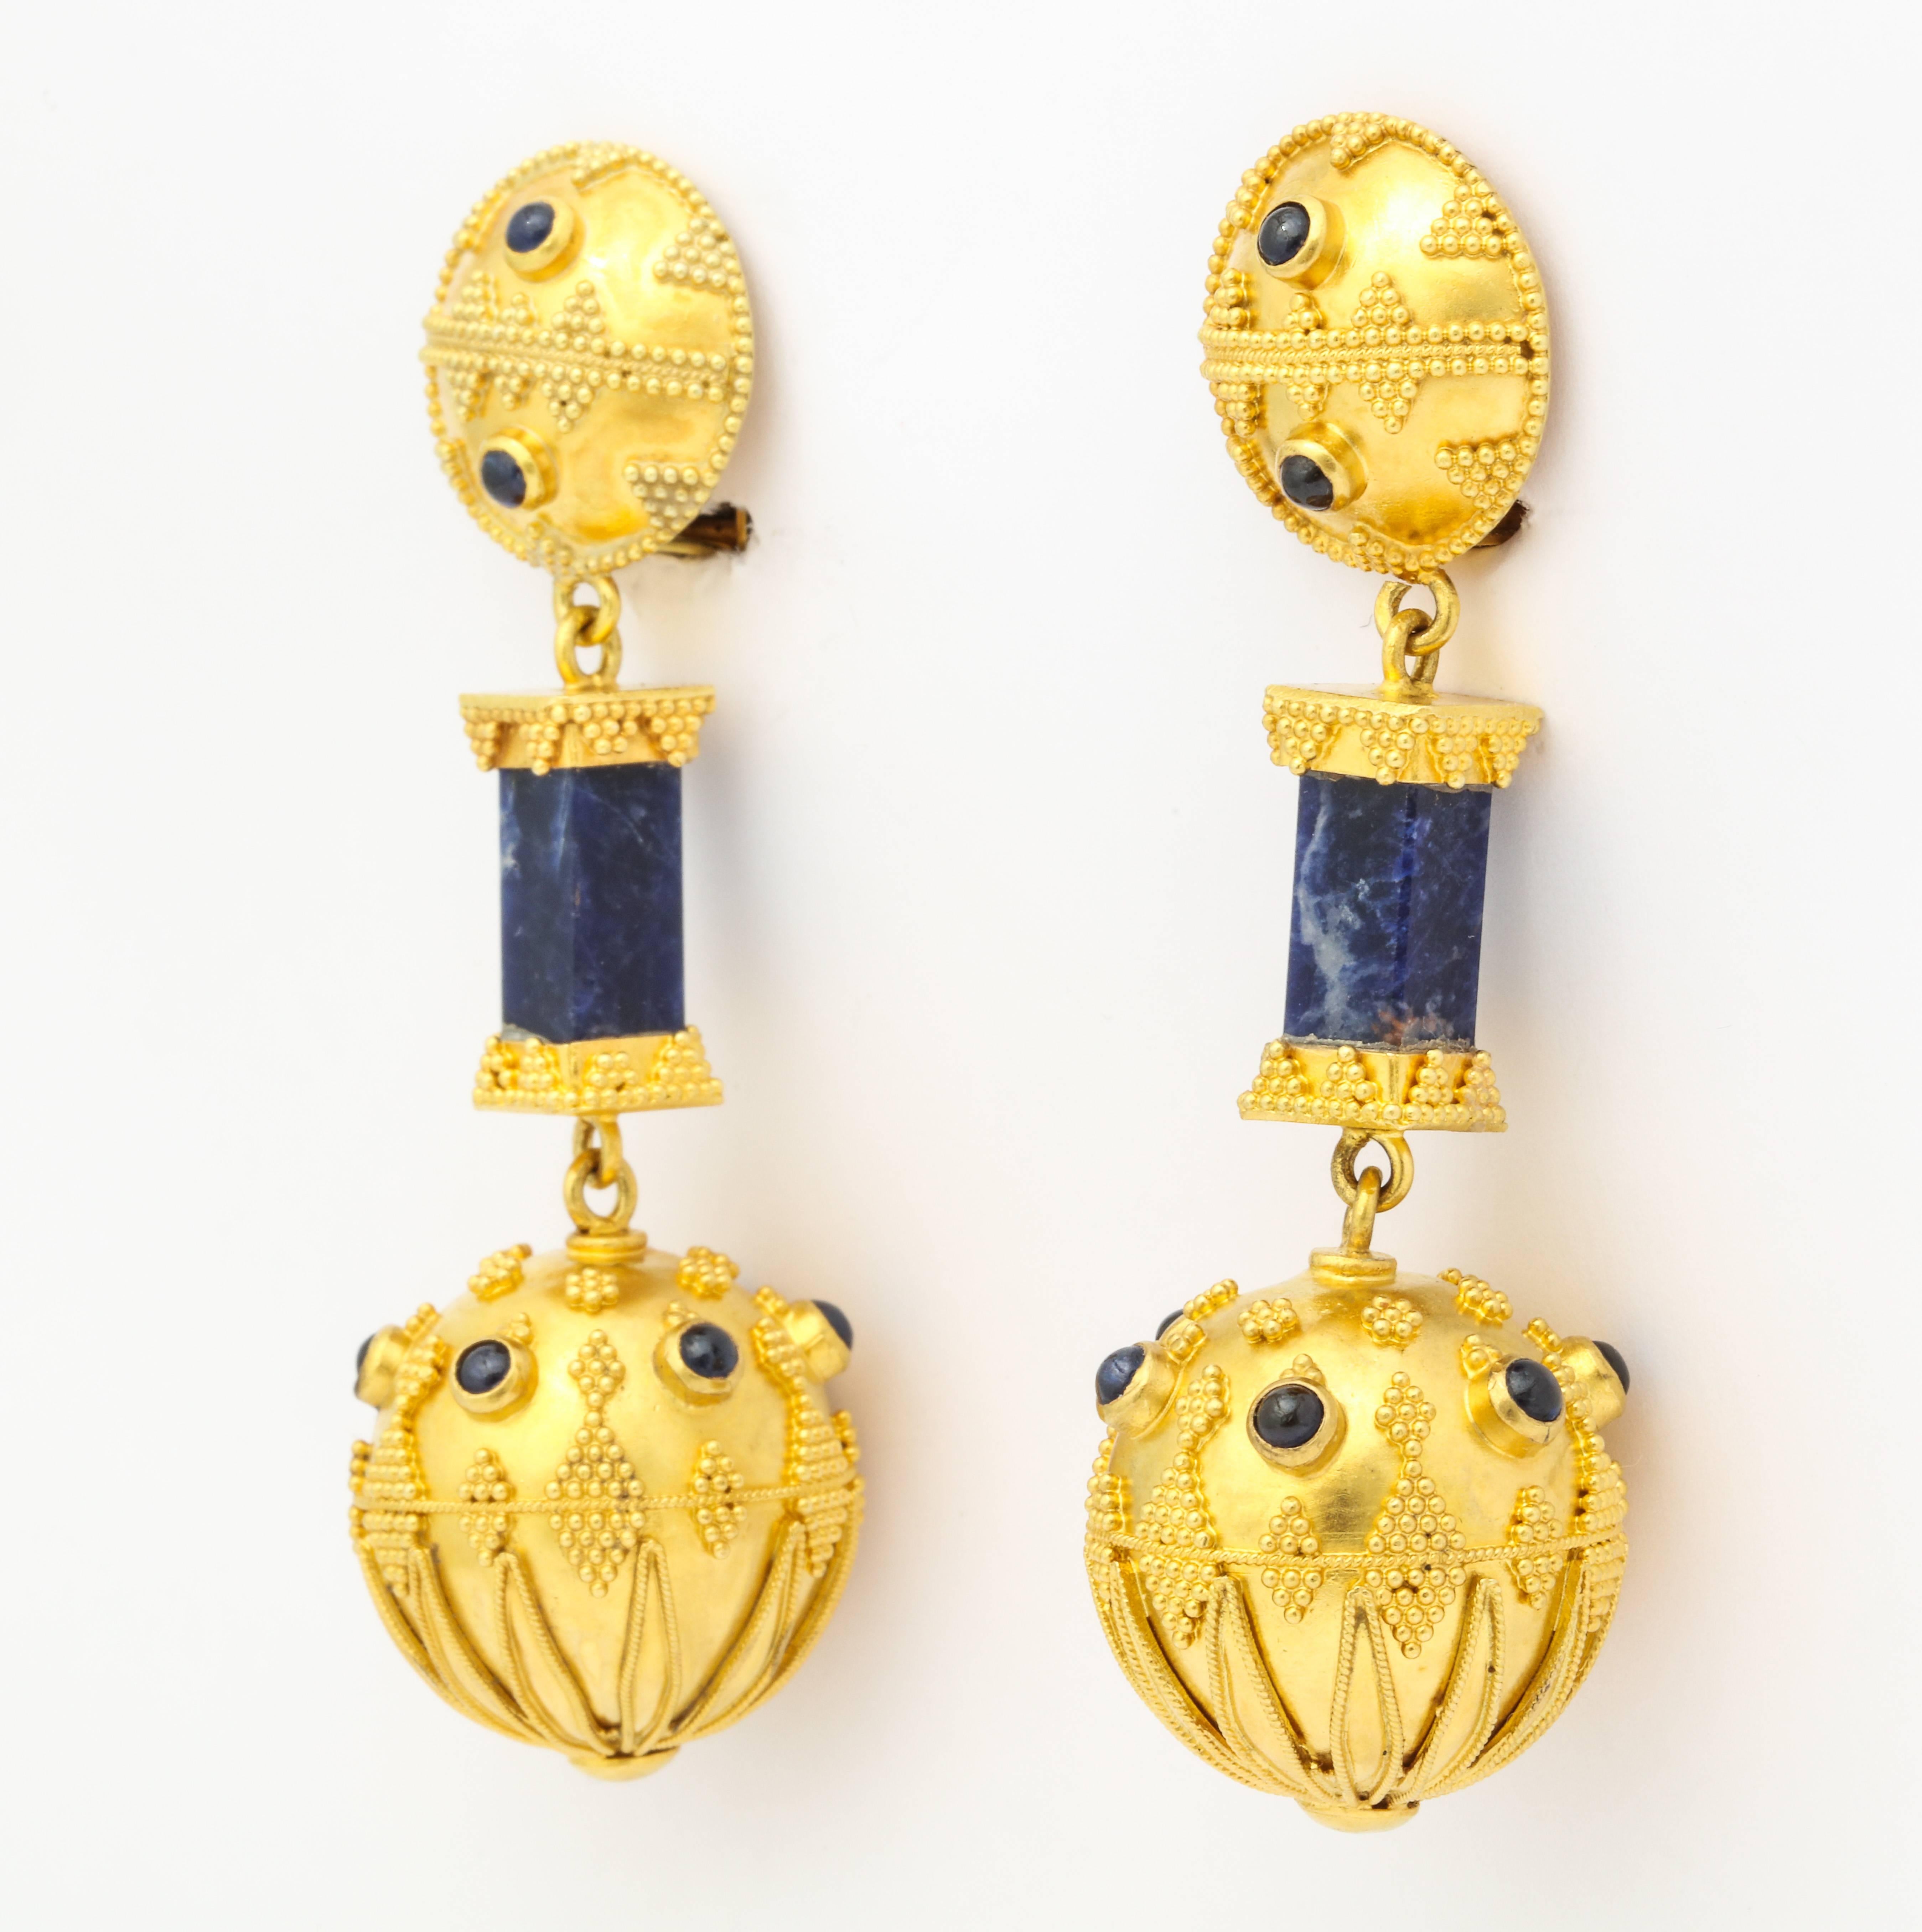 Atemberaubende Ohrringe aus den 1970er Jahren, die dem hellenistischen griechischen Stil des 4. Jahrhunderts nachempfunden sind. Sie bestehen aus 22-karätigem Gold, das mit quadratischen Stäben aus reichem, tiefem Lapis besetzt ist, sowie aus